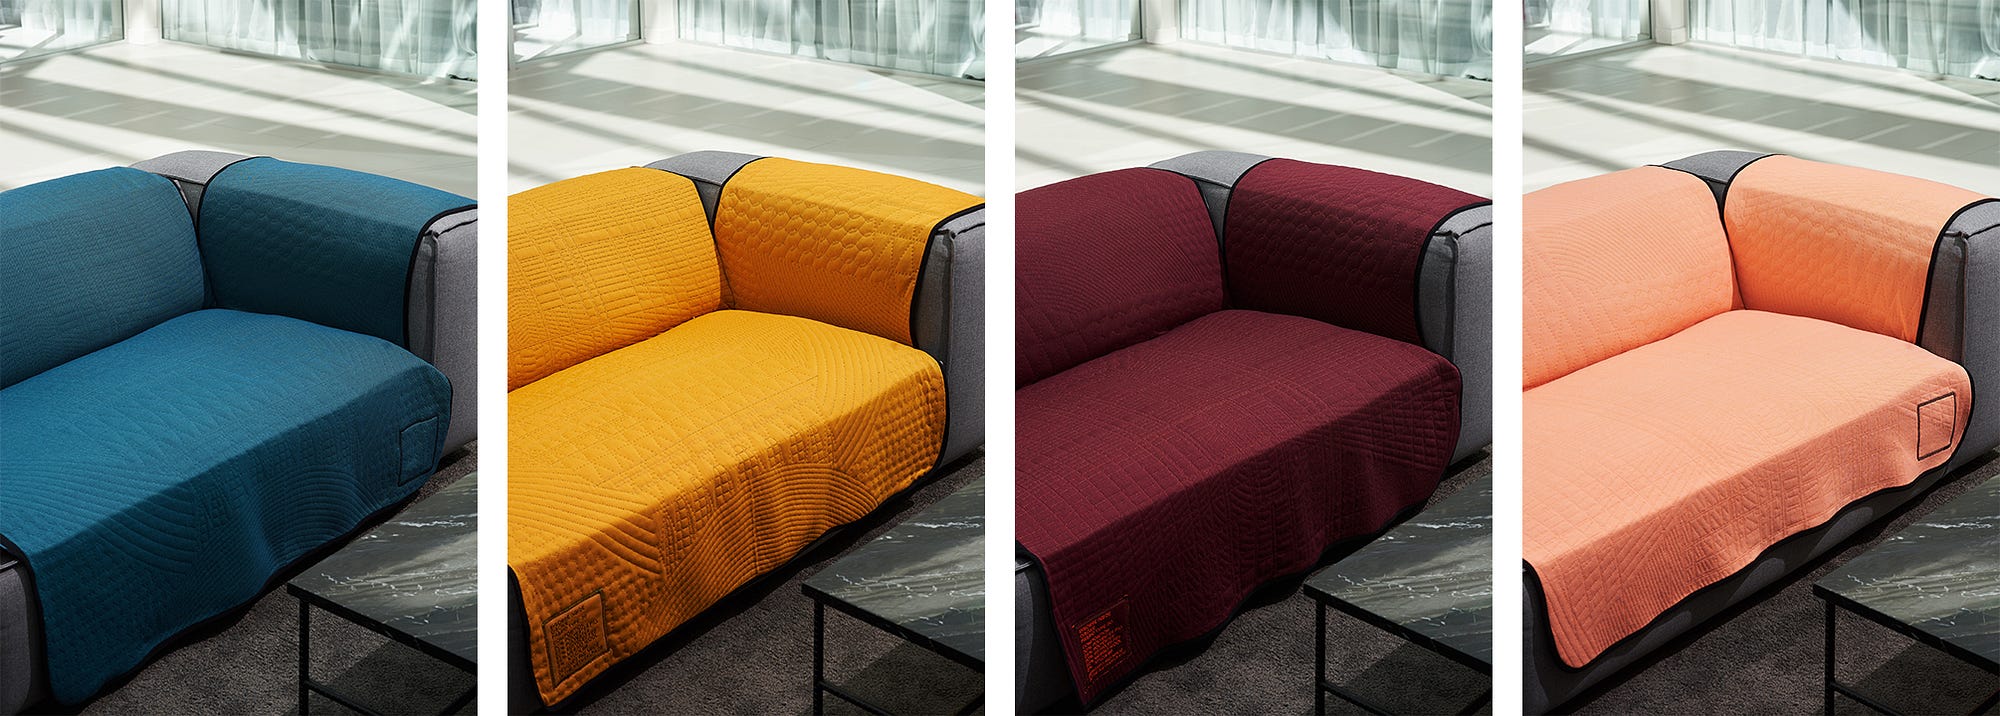 Furniture Wear for CIBONE | by BYBORRE | Medium | Medium